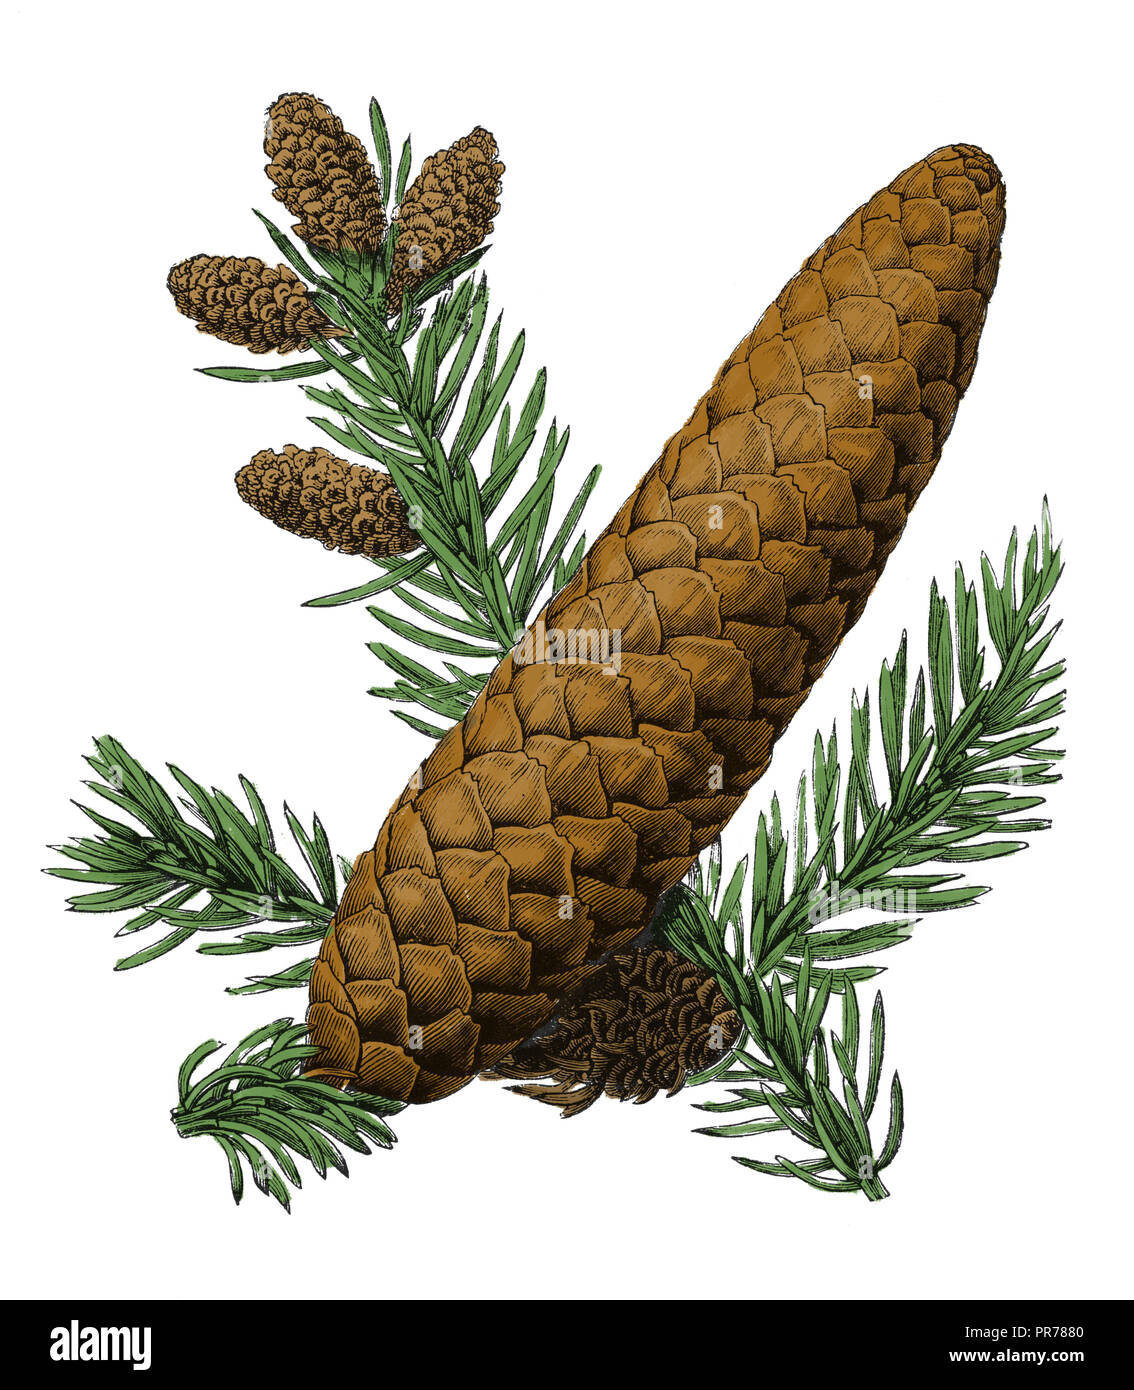 19th century illustration of Norway spruce (Picea abies). Published in Systematischer Bilder-Atlas zum Conversations-Lexikon, Ikonographische Encyklop Stock Photo